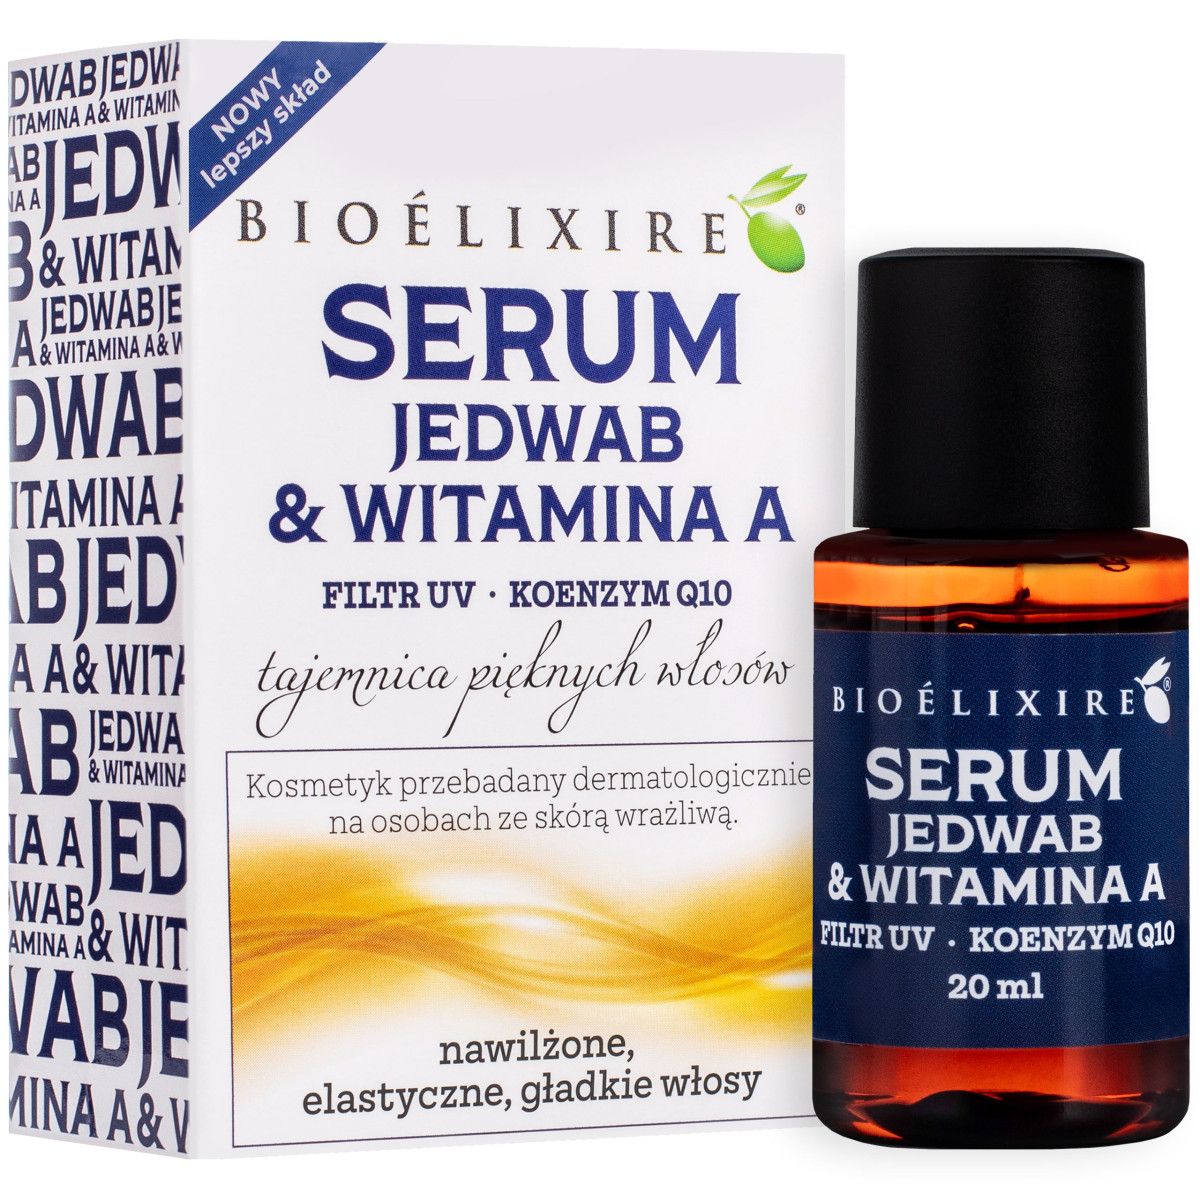 Bioelixire Jedwab + Witamina A serum wzmacniające włosy 20ml